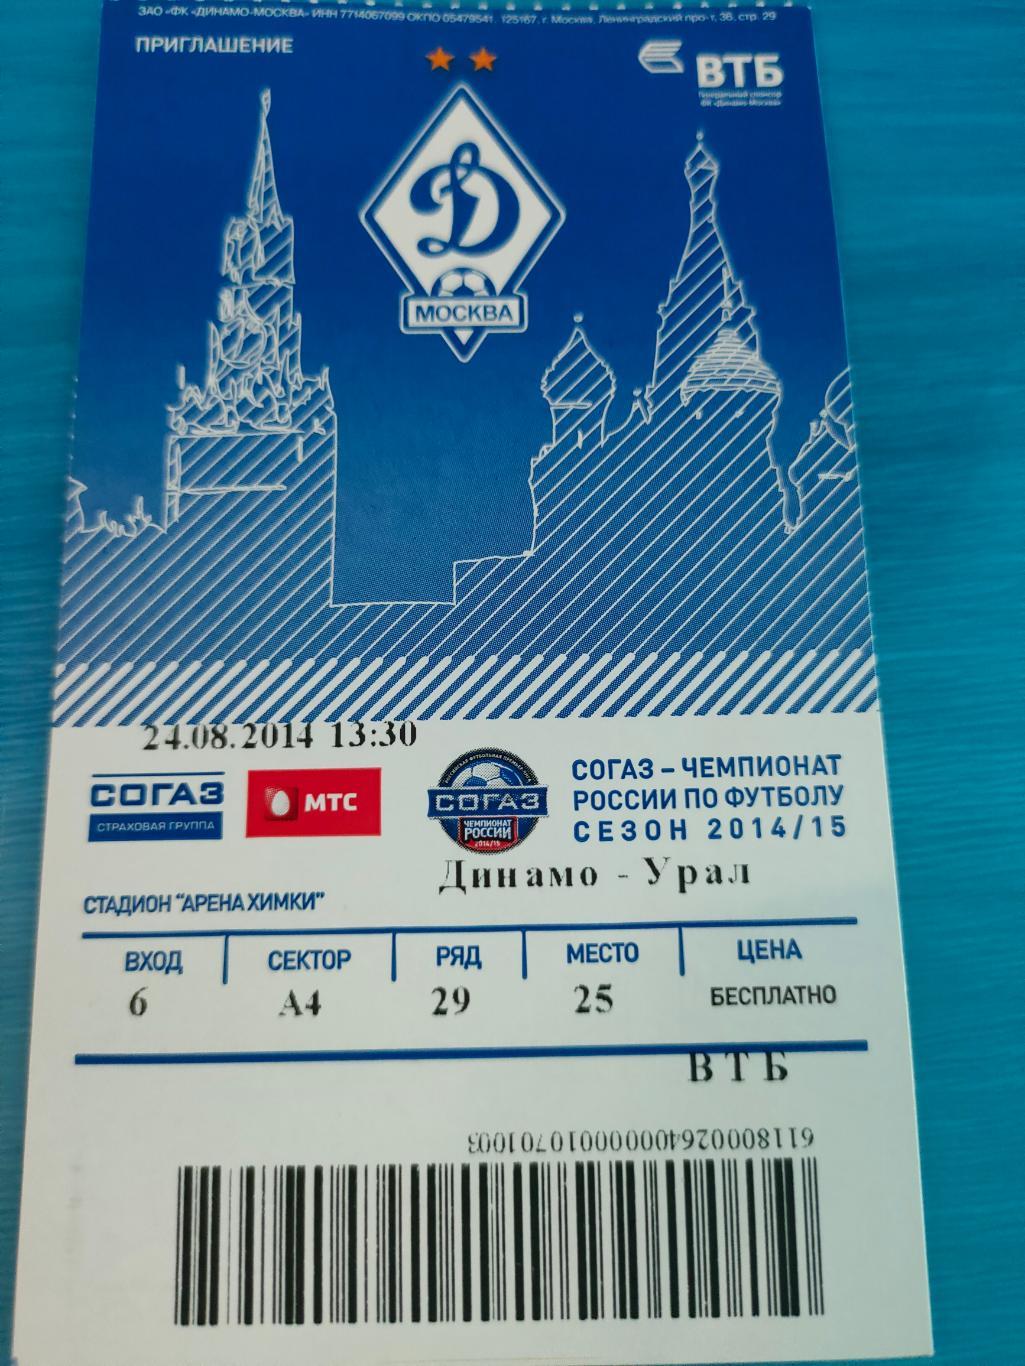 24.08.2014 - Динамо (Москва) vs Урал (Екатеринбург)